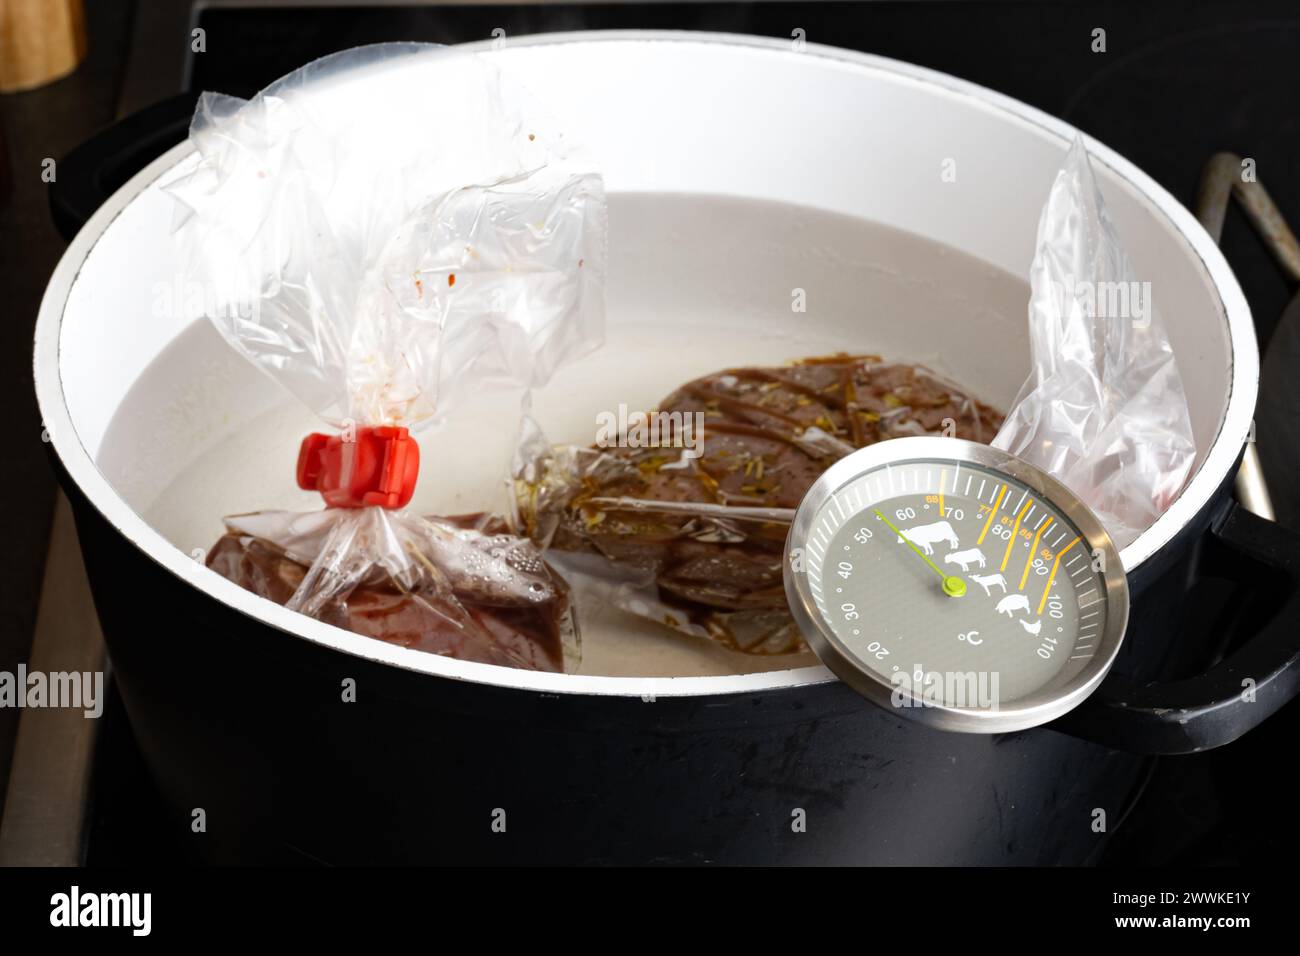 Description: Préparation de steak de filet de boeuf cru pour le bain sous vide en pot avec thermomètre sur la cuisinière de cuisine, photographié du côté. Banque D'Images